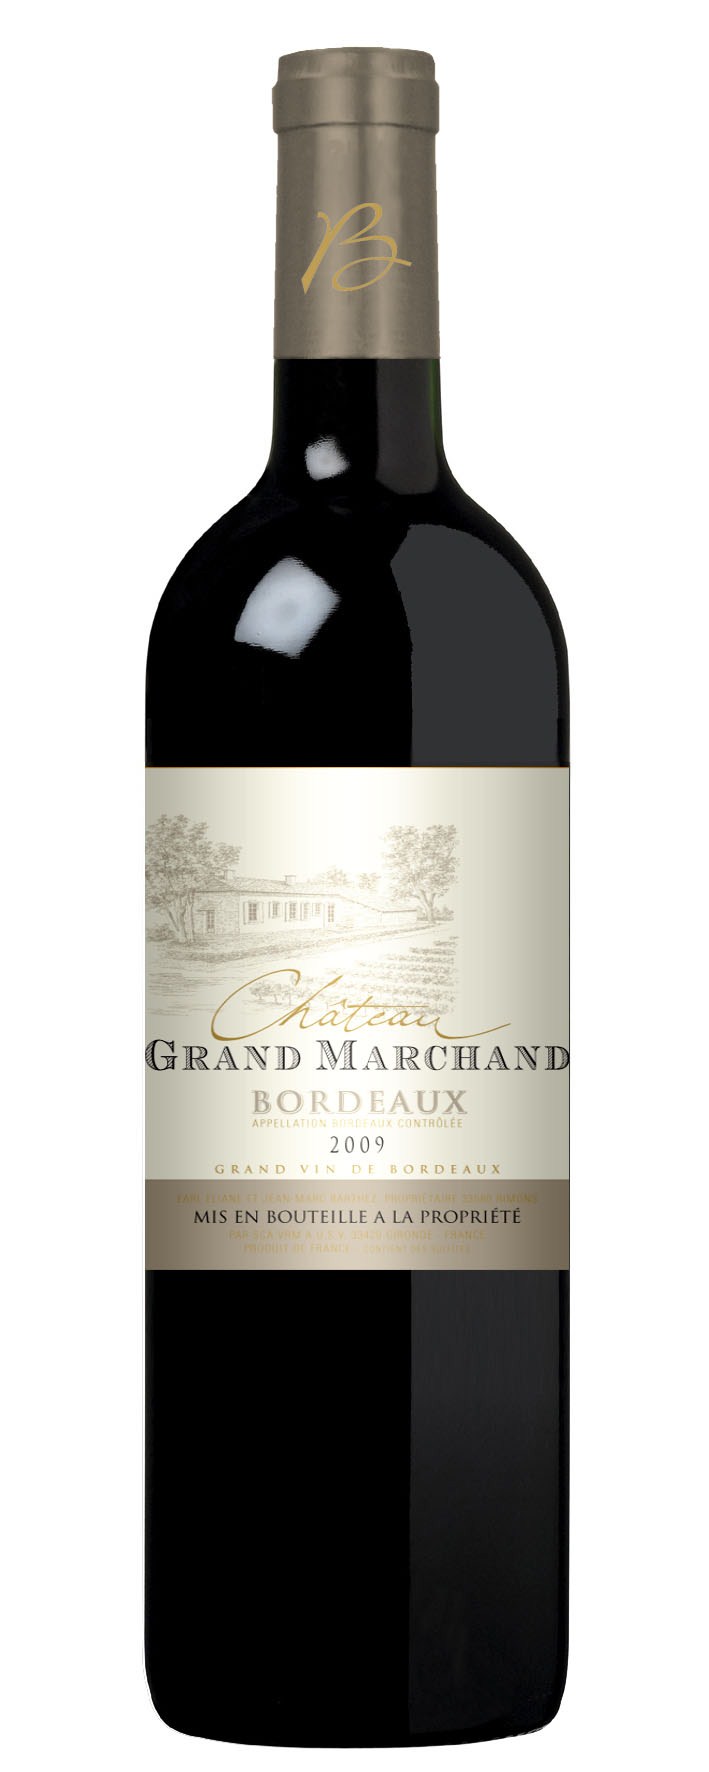 Bordeaux Producer s choice: Château Grand Marchand 2010 Informations Appellation: AOC Bordeaux Grapes: Merlot,